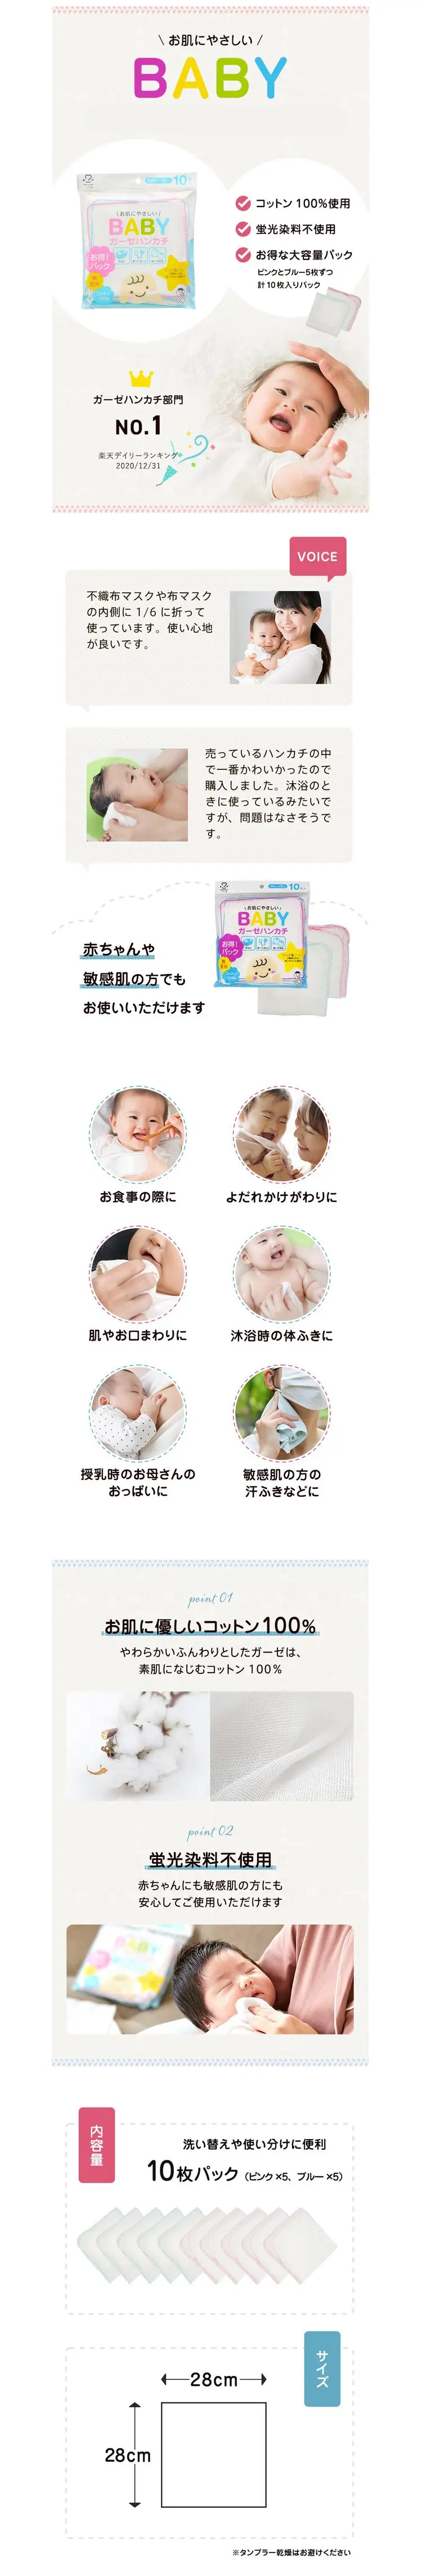 安美洁 婴儿专用纯棉纱巾;10条装